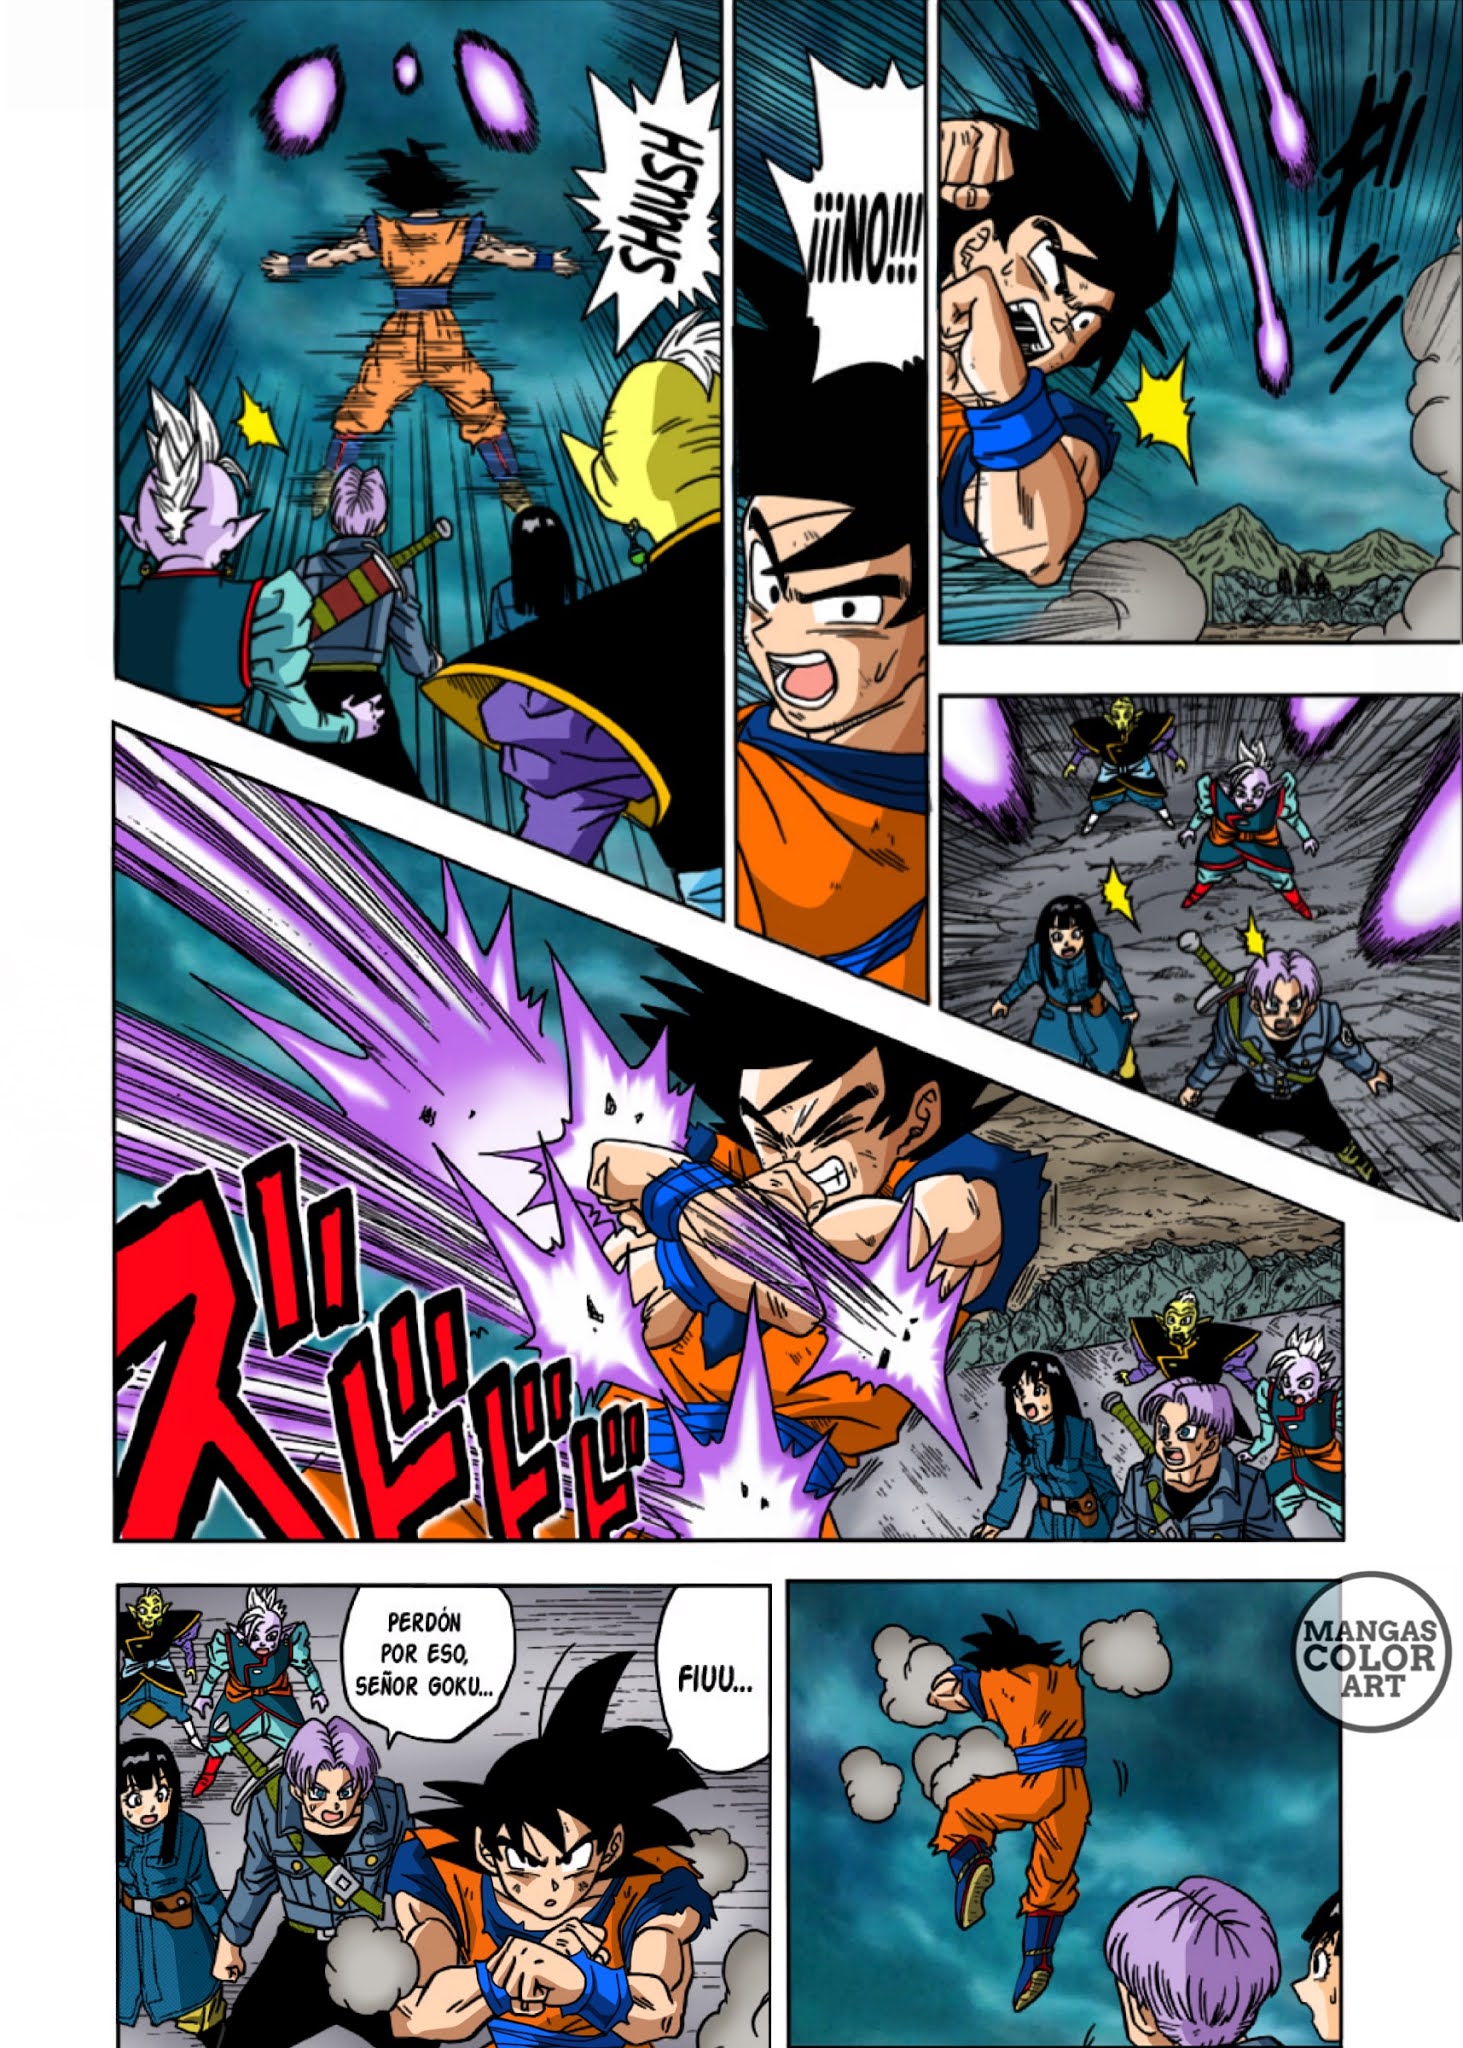 Endereço Disponível: Capítulo 23 do Mangá de Dragon Ball Super Traduzido -  O Verdadeiro Poder do Potara